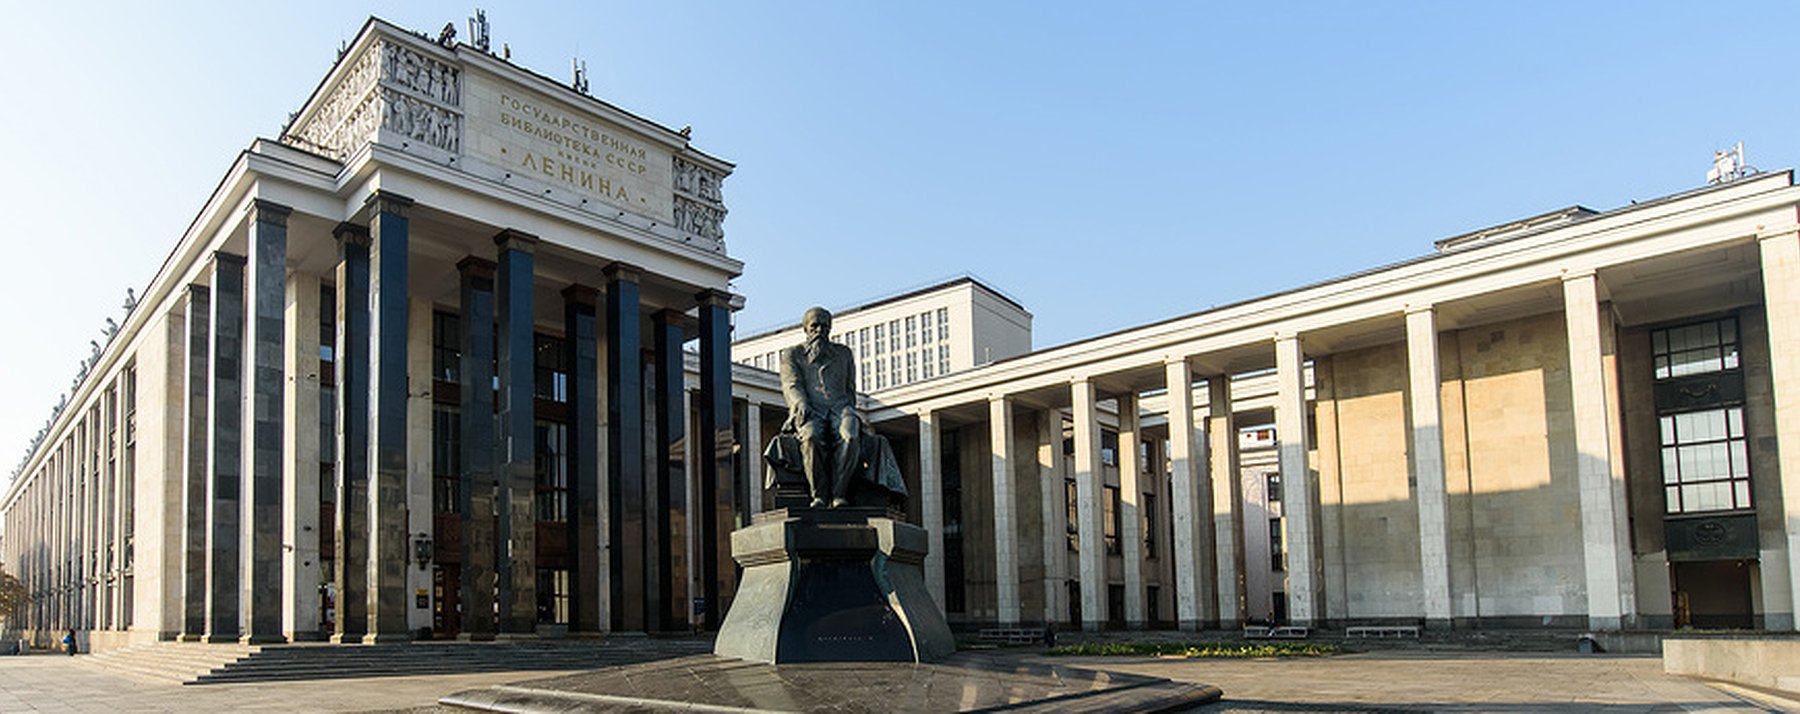 Российская государственная библиотека (РГБ)